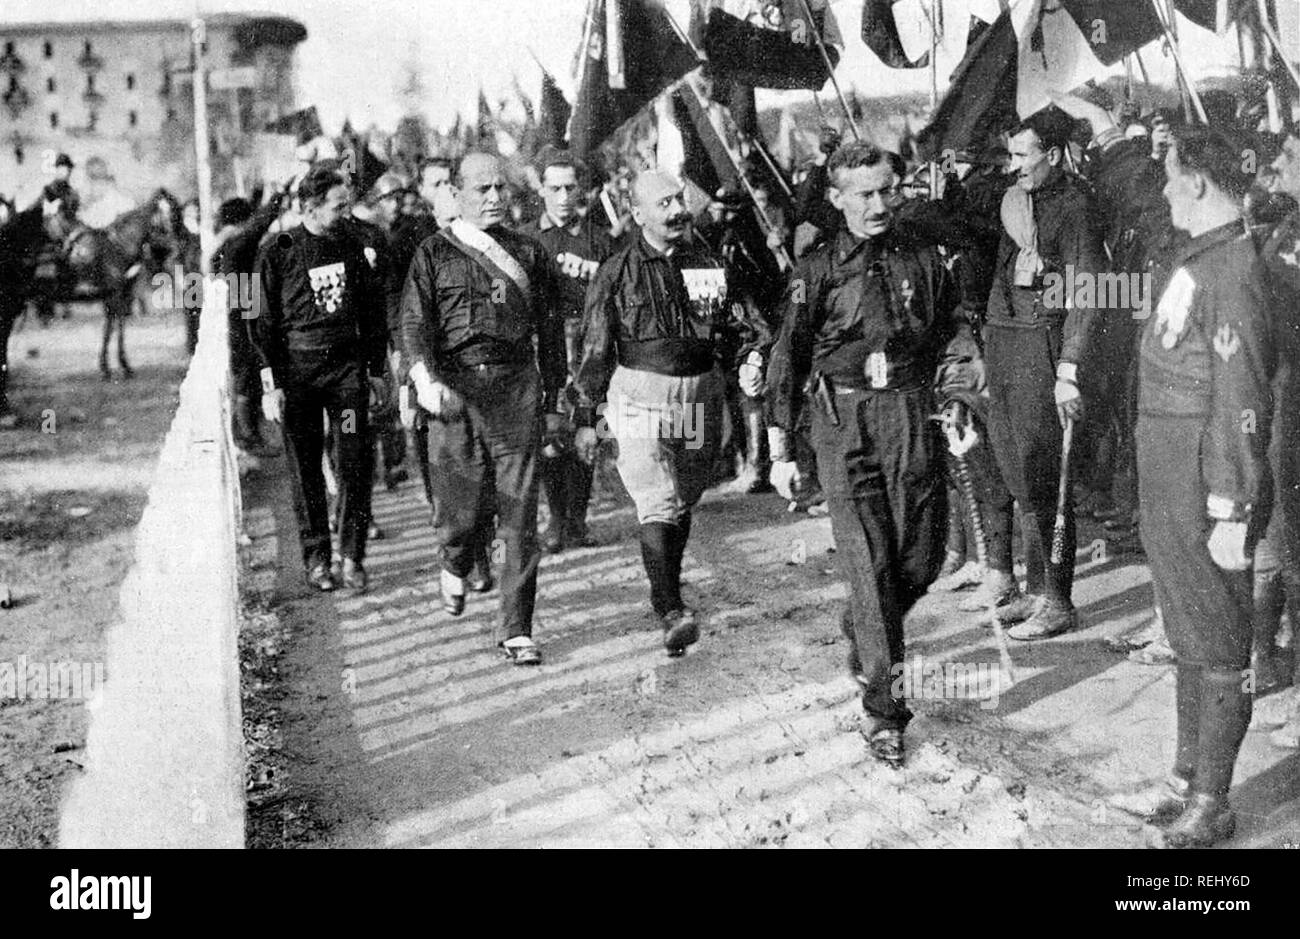 March on Rome 1922 From left to right: Italo Balbo, Benito Mussolini, Cesare Maria de Vecchi and Michele Bianchi in 1922 Stock Photo